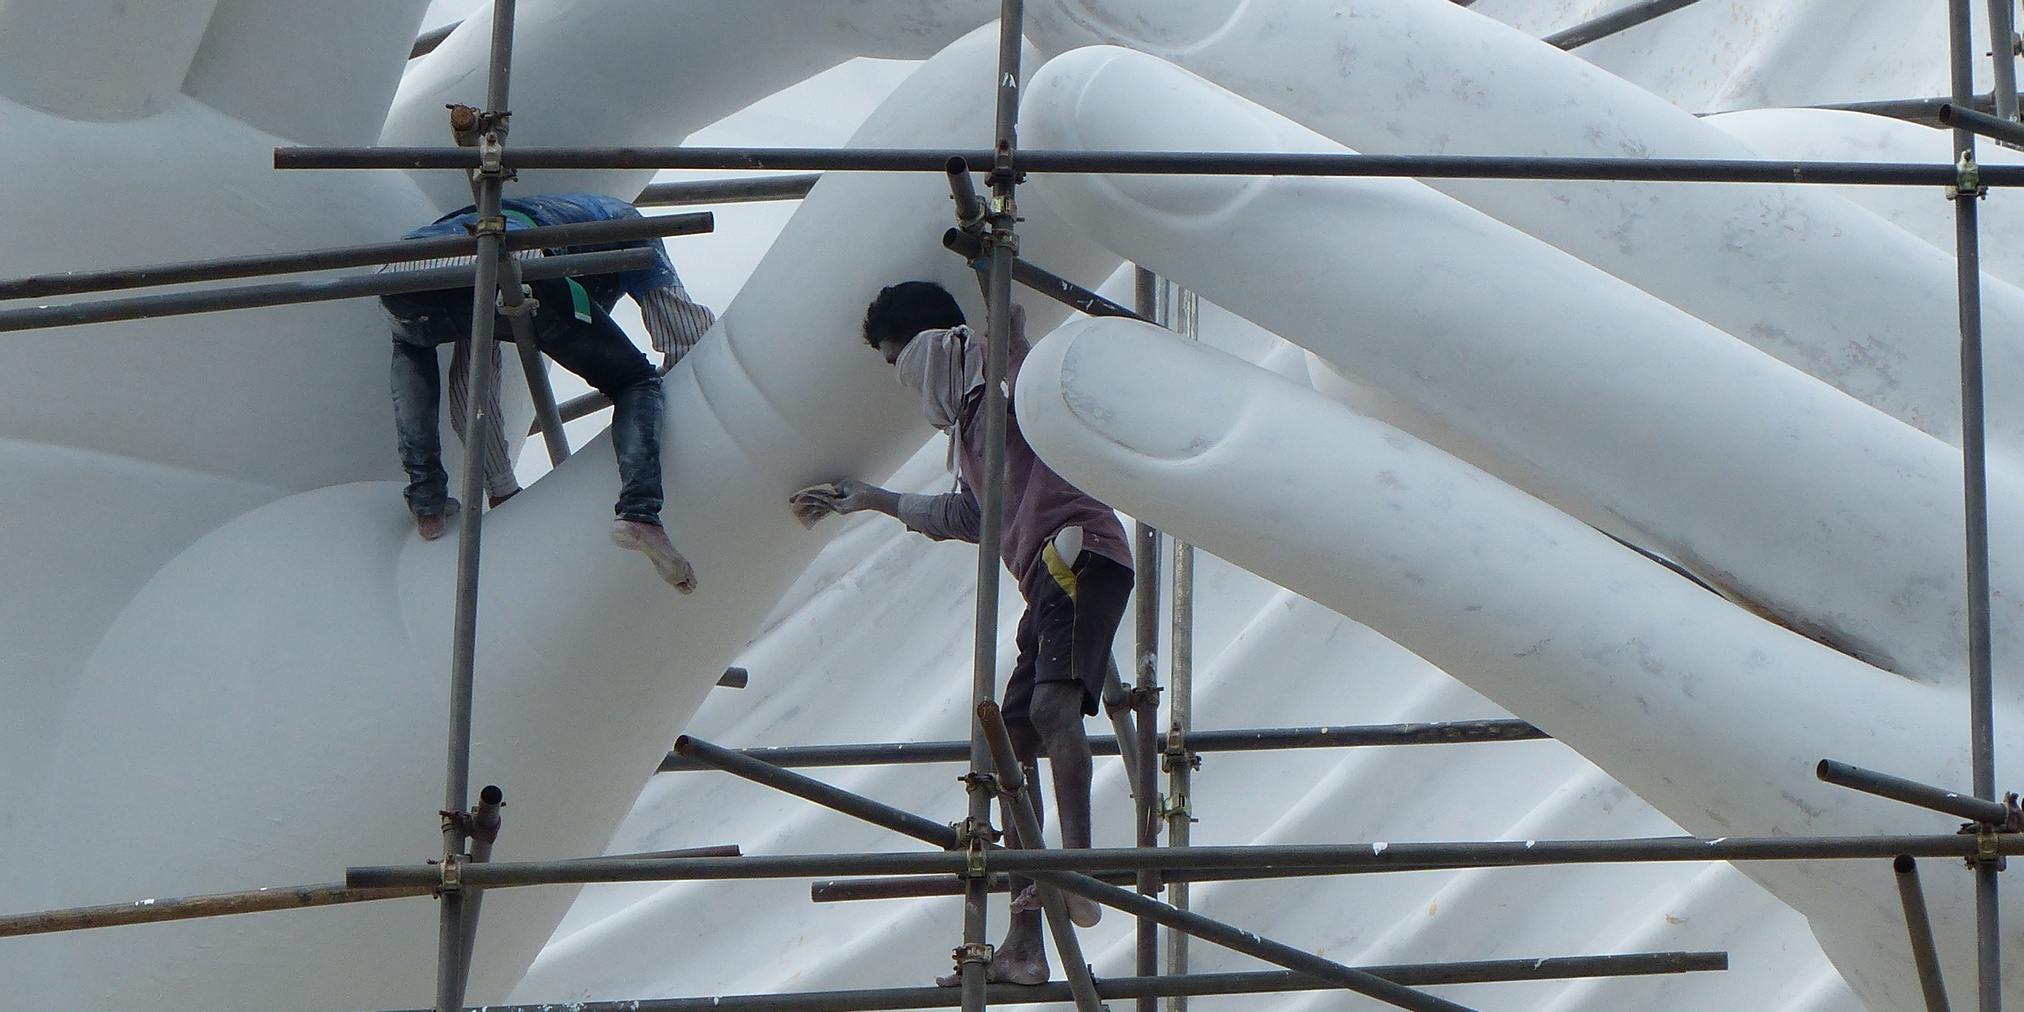 Arbeiders herstellen een Budhabeeld in Sri Lanka. Hoe gemotiveerd zijn ze om in die onveilige situatie te werken? (Foto: Jozef Van Giel)